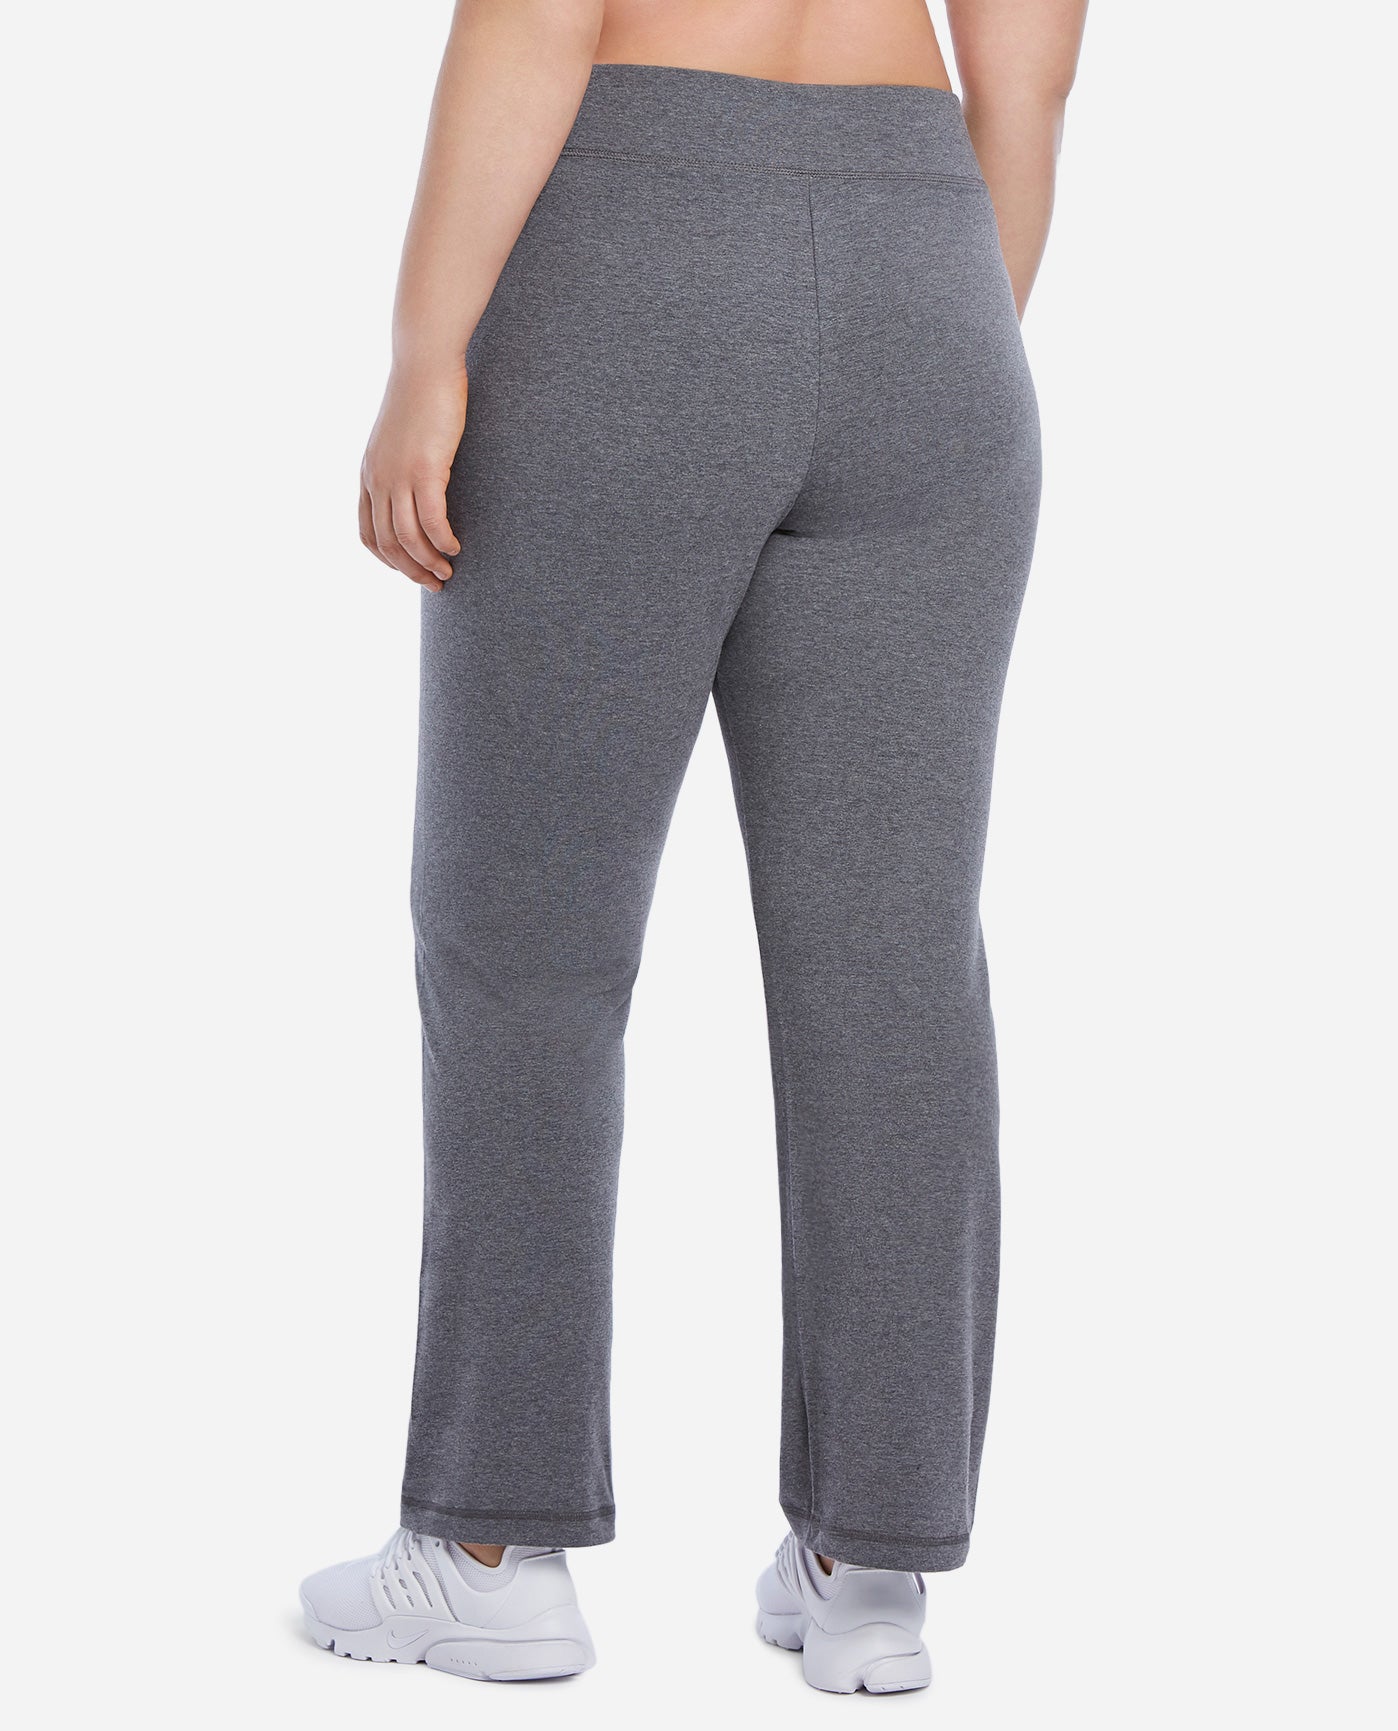 danskin bootcut yoga pants plus size